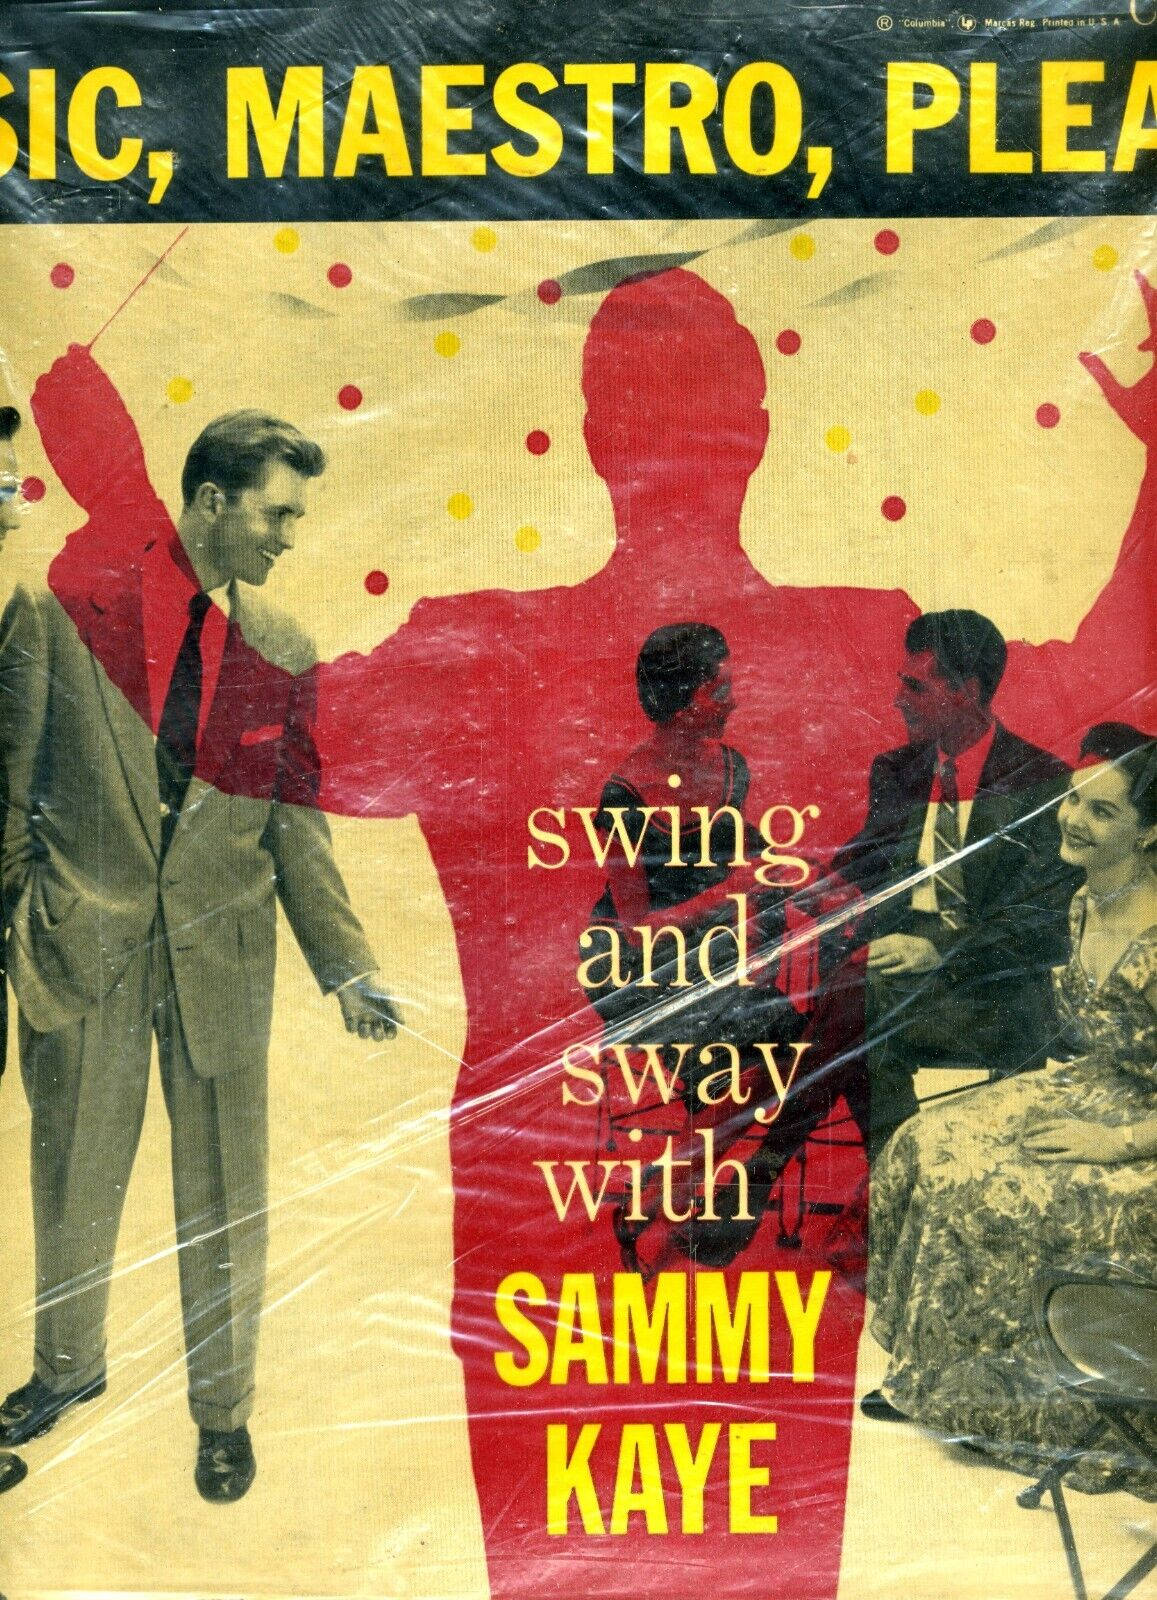 Sammykaye Musikmeister Bitte Vinyl-cover Wallpaper